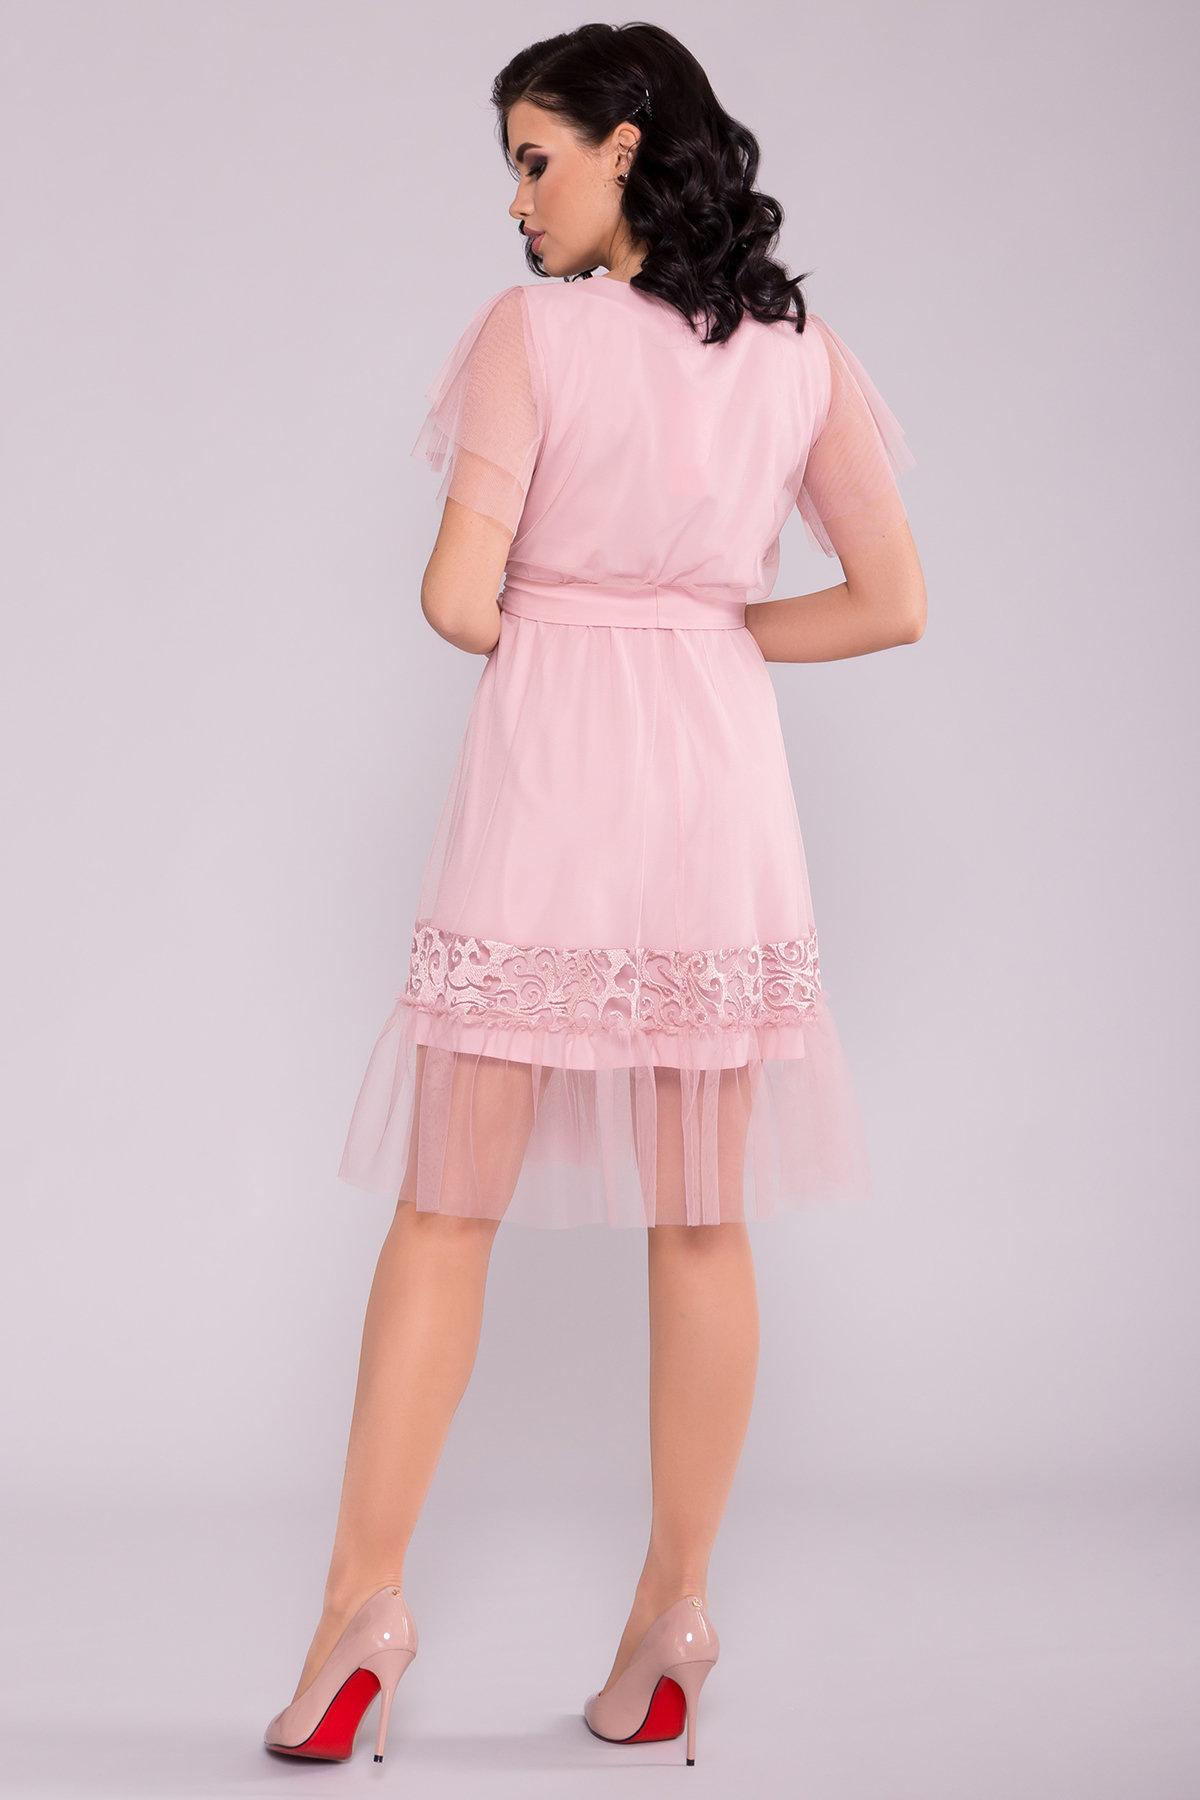 Платье Риана 6701 АРТ. 42073 Цвет: Пудра светлая 11 - фото 2, интернет магазин tm-modus.ru